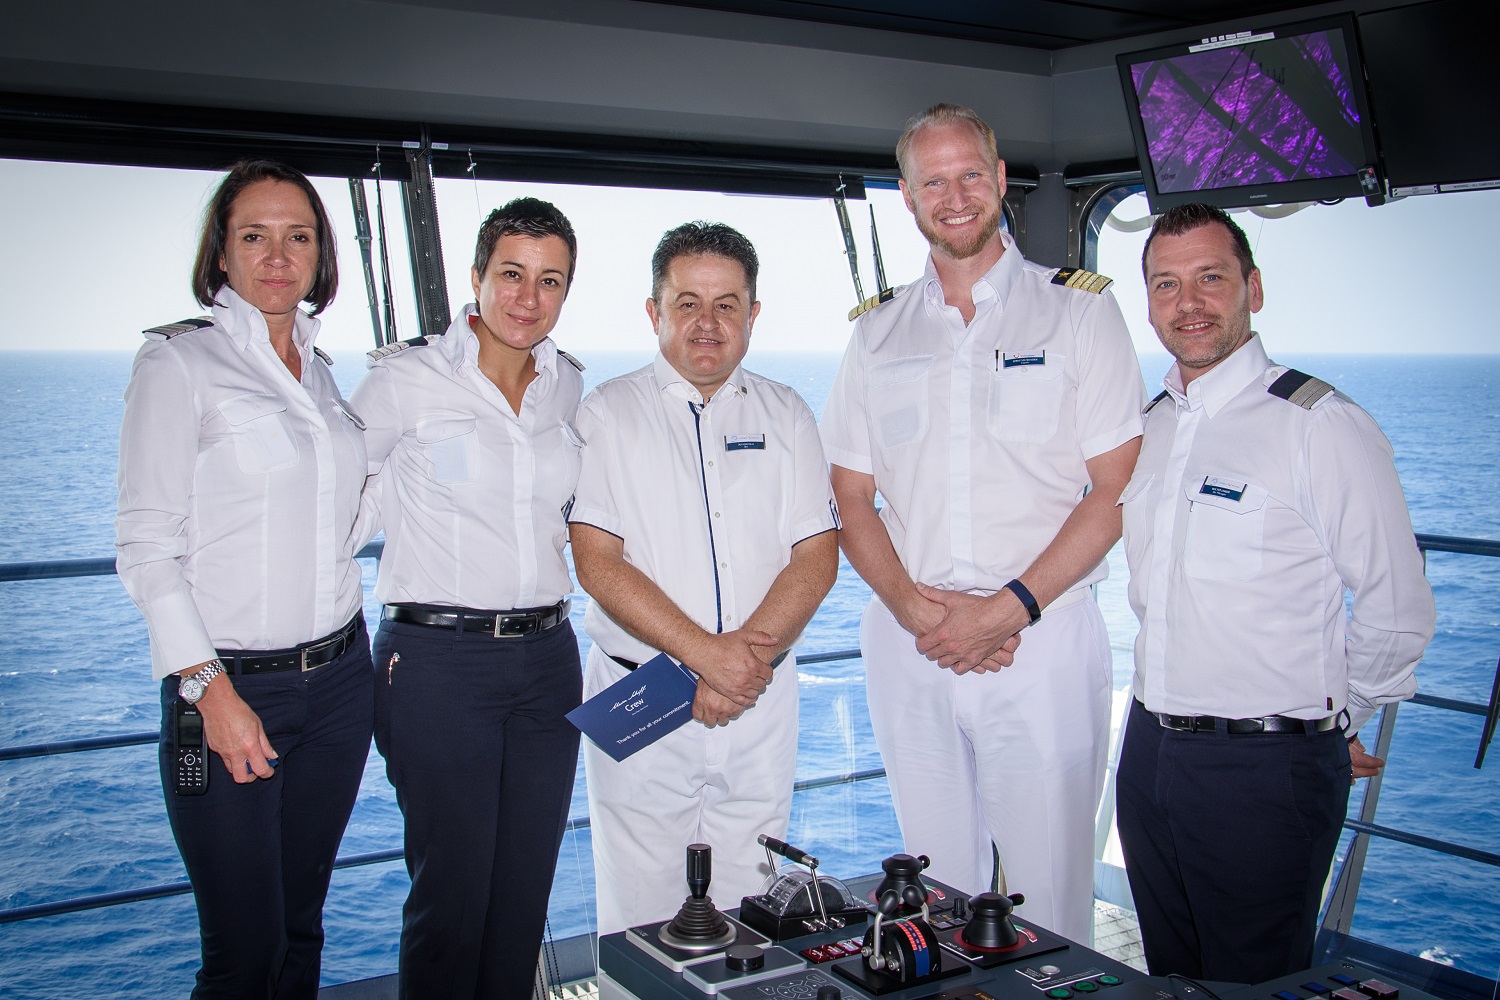 Mein Schiff Urlaubsheld im August 2018: Bar Steward Ali Koroglu mit seinen Vorgesetzten